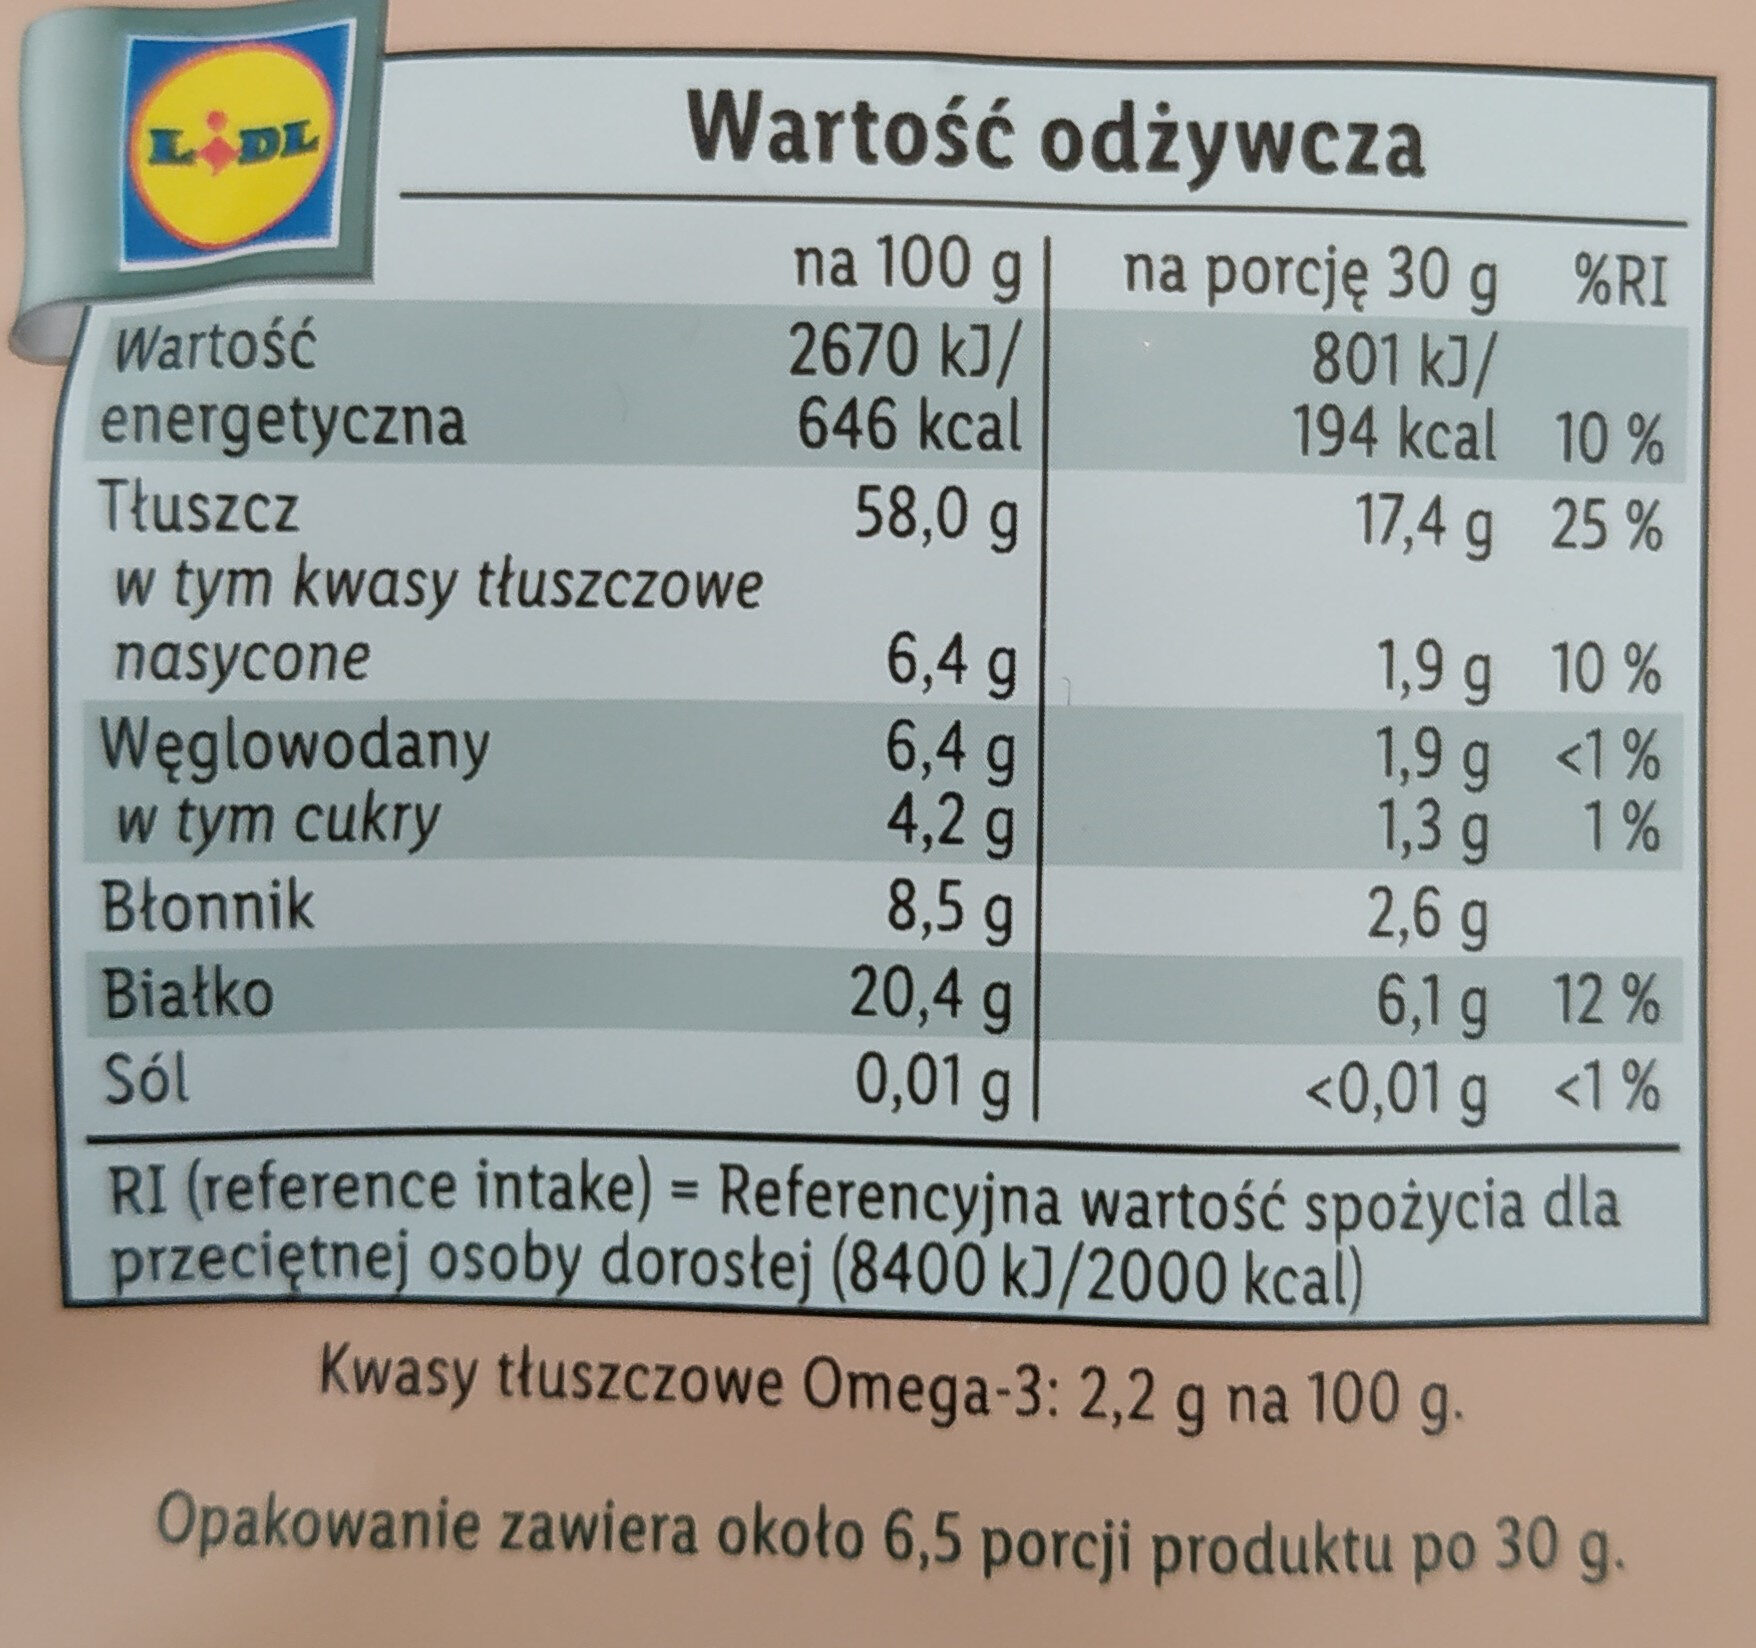 Mixed Nuts - Wartości odżywcze - pl